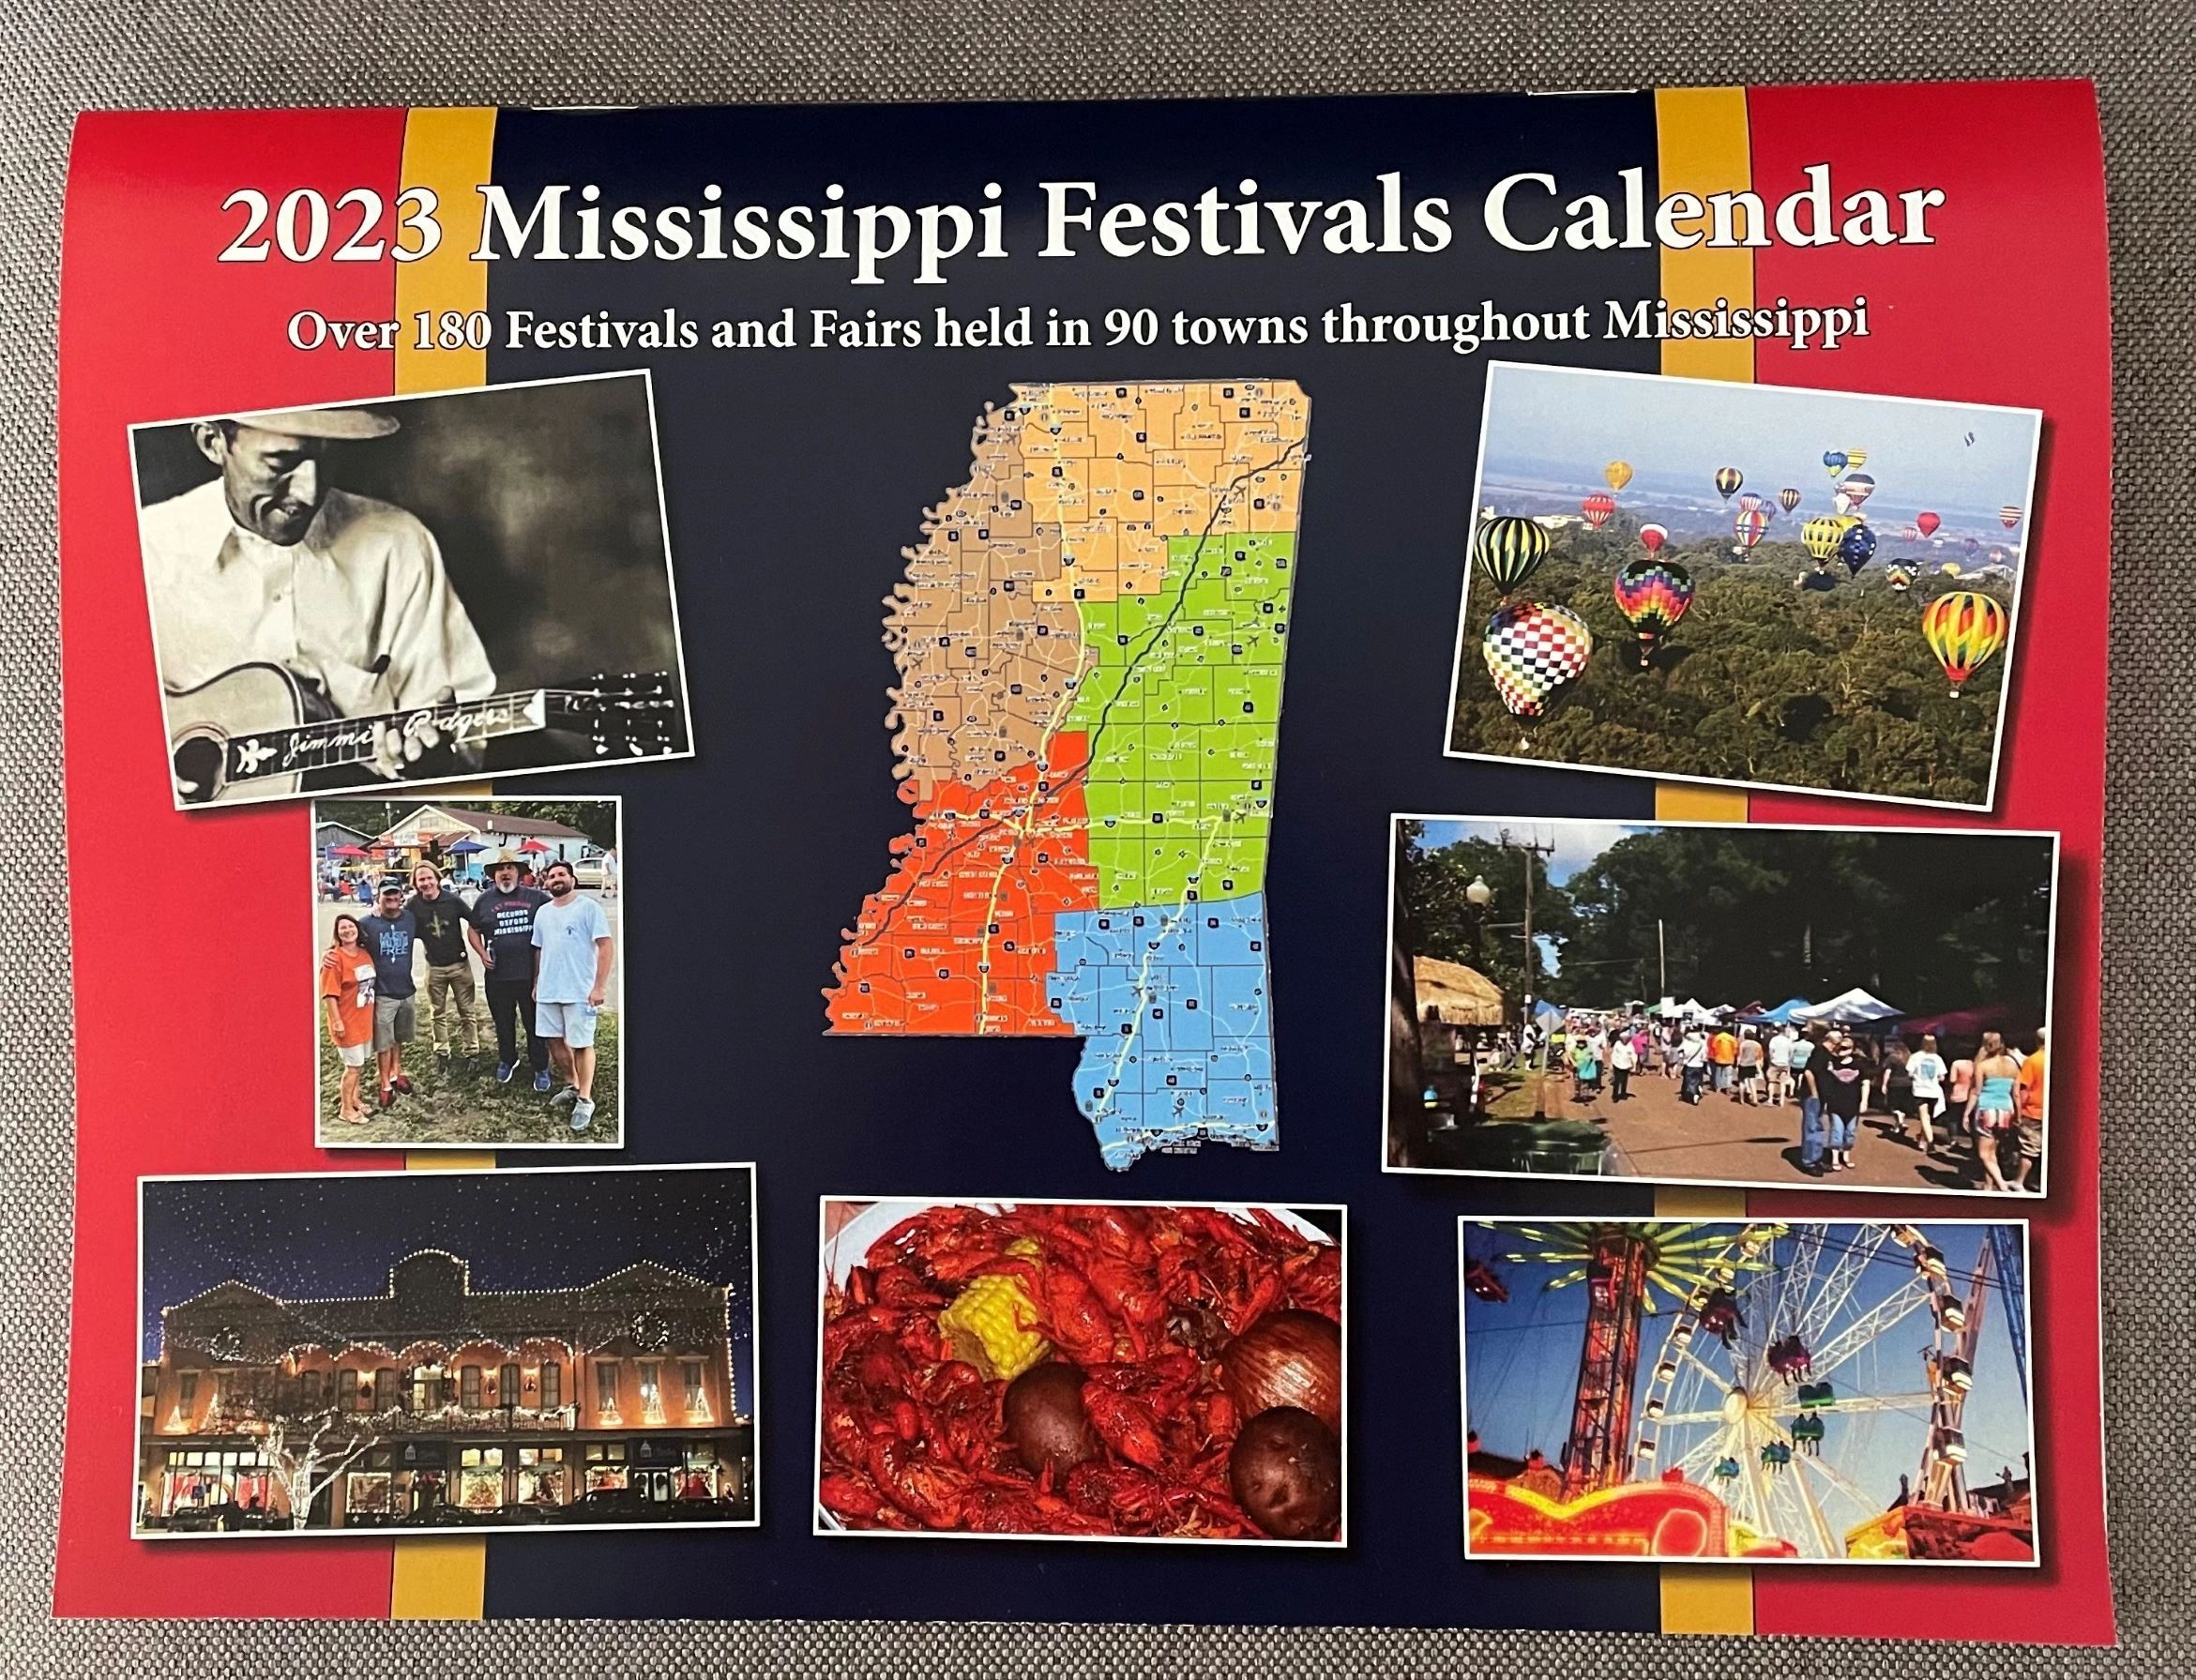 Mississippi Festivals Calendar, LLC